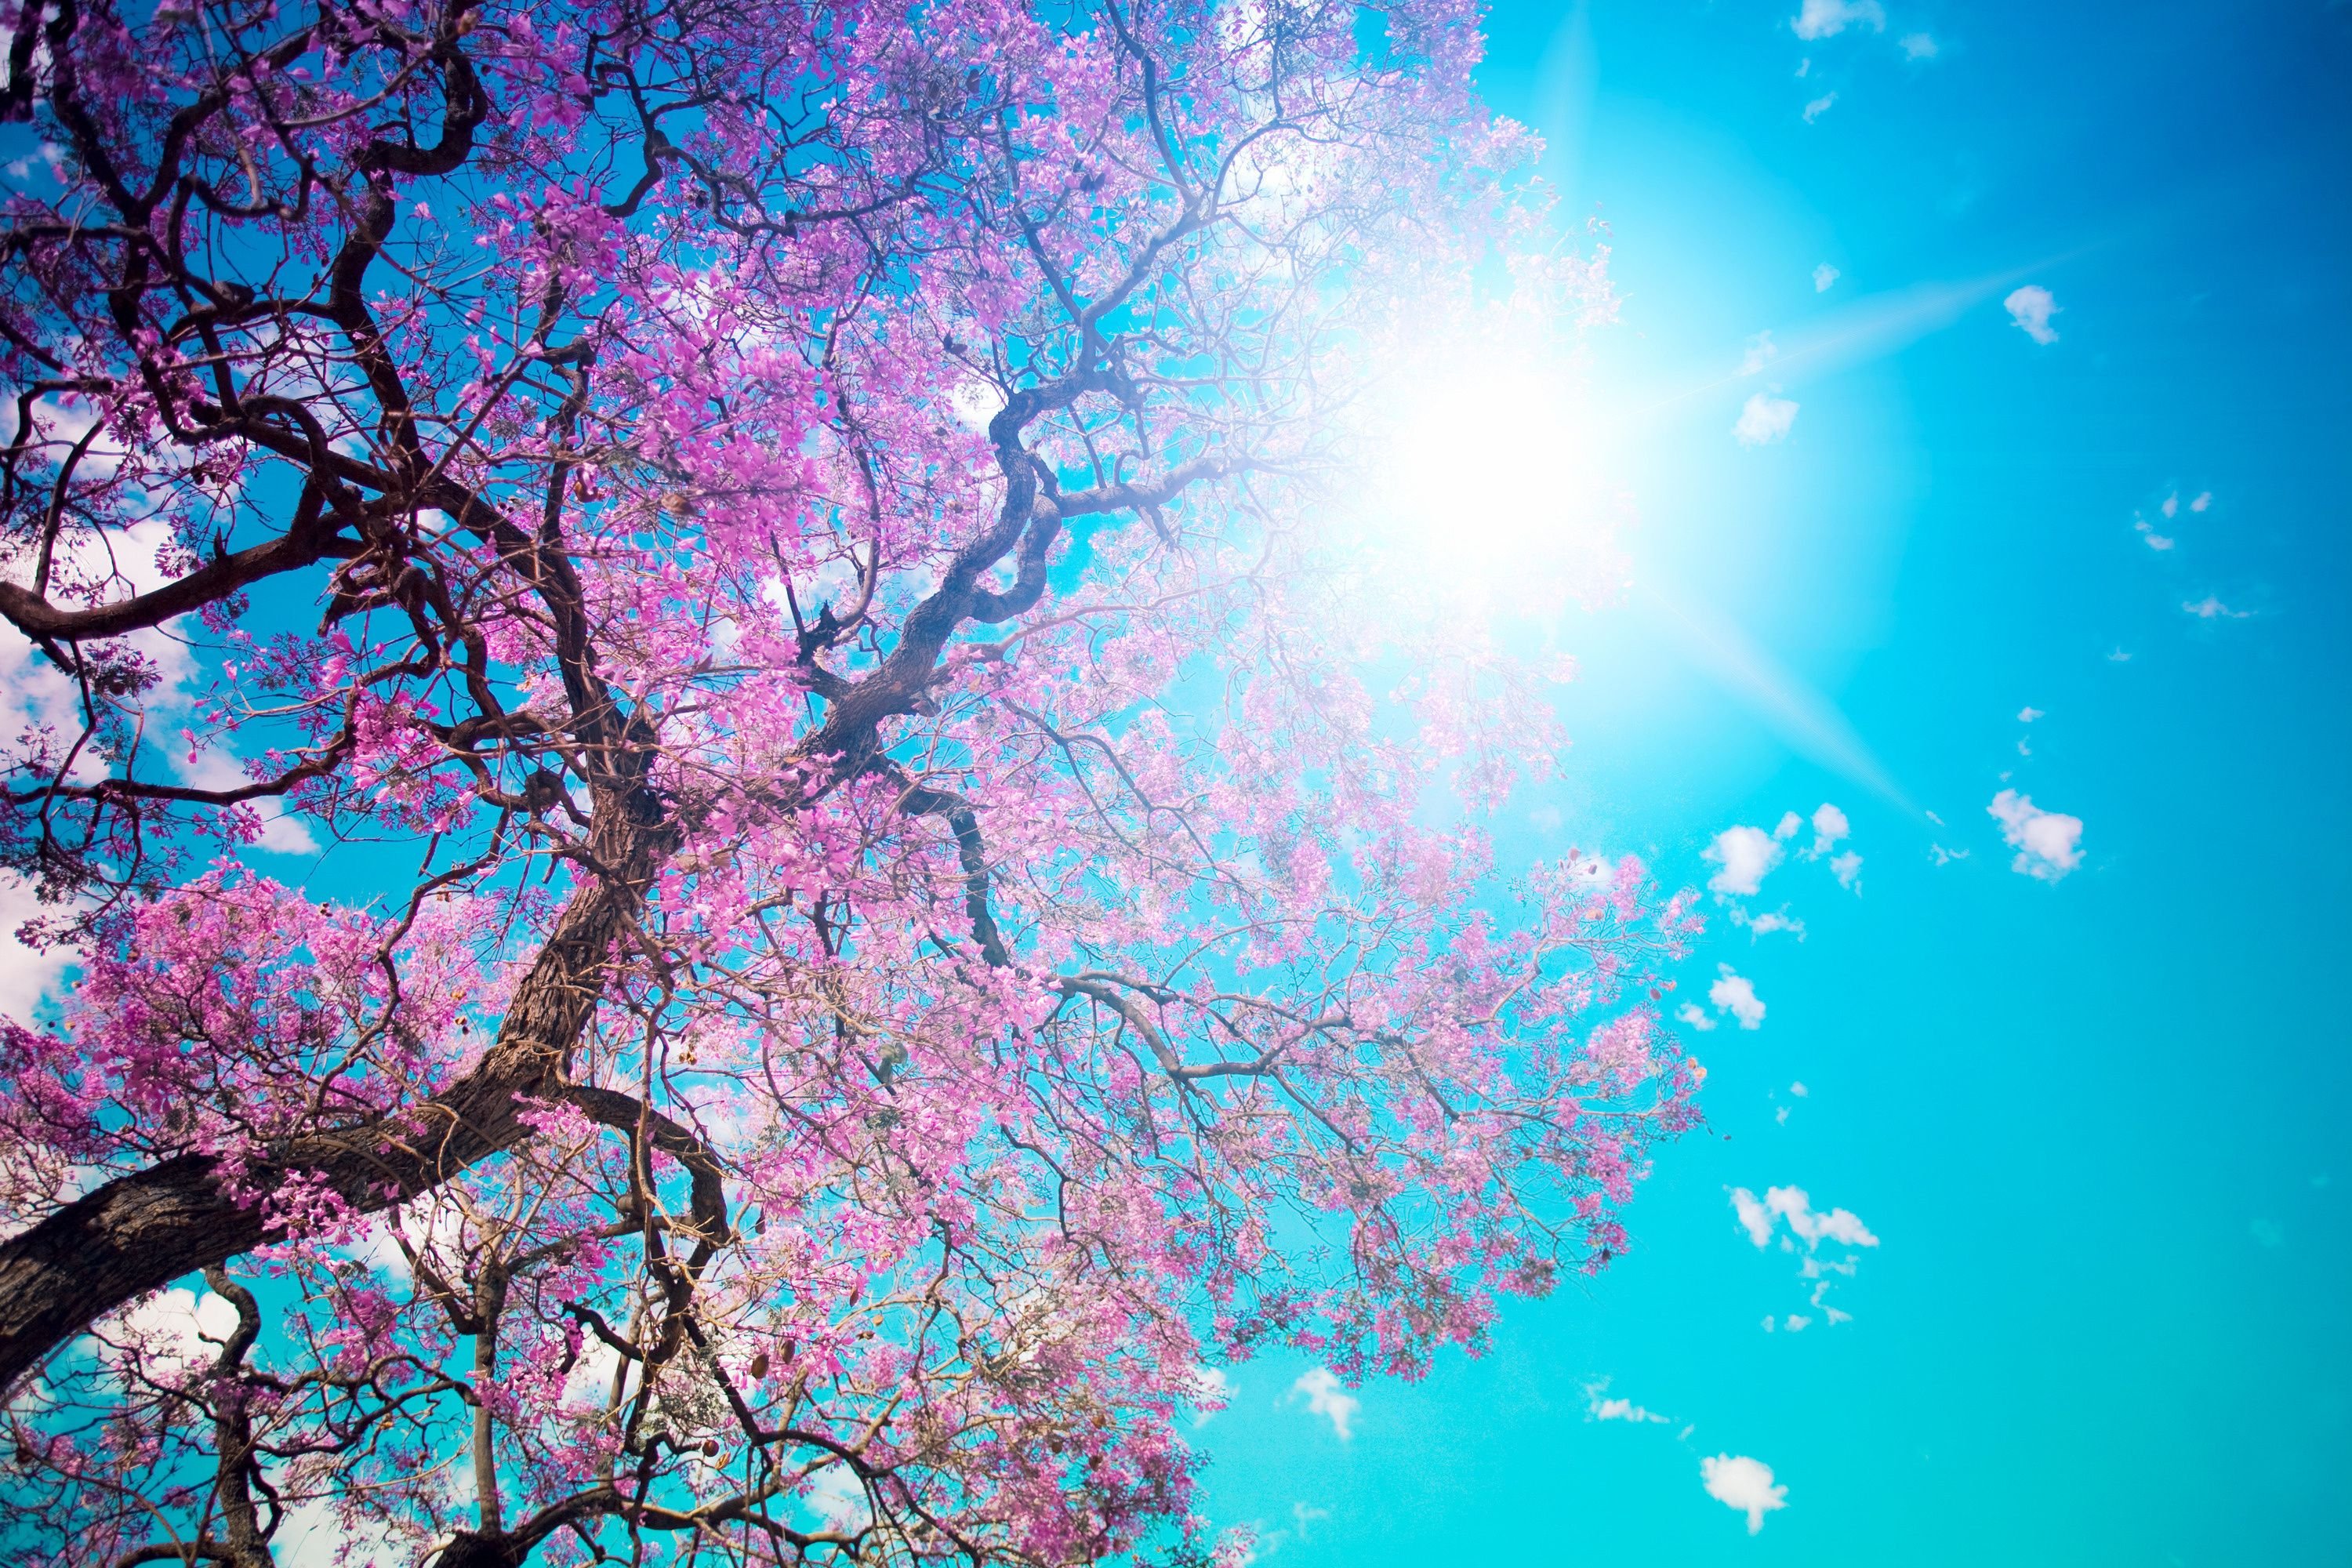 والپیپر خورشید و شاخه های درختی با شکوفه های صورتی از پایین 